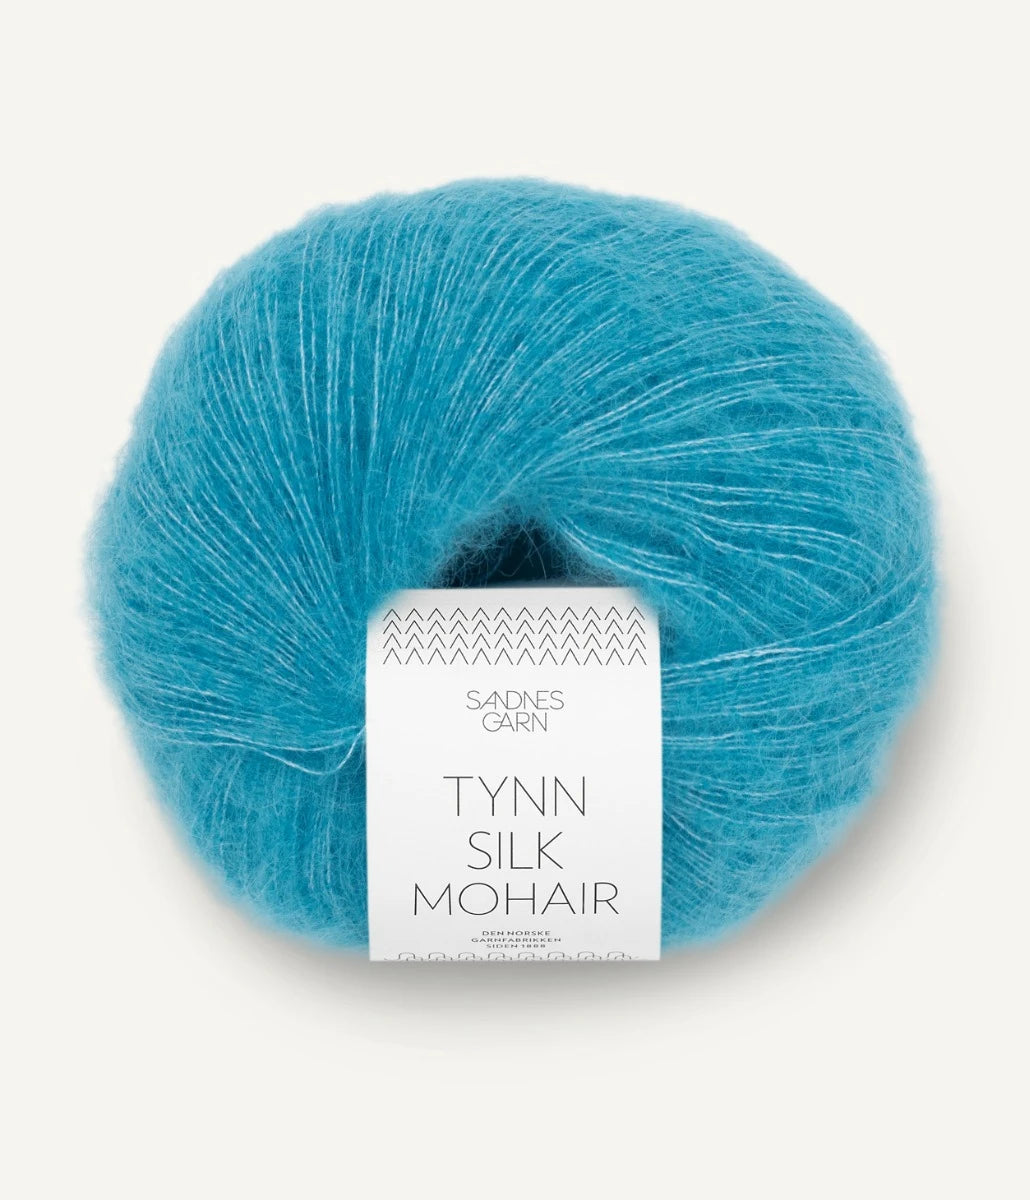 Kuvassa on Sandnes Garn Tynn Silk Mohair -lanka (yarn) värissä Turkis.